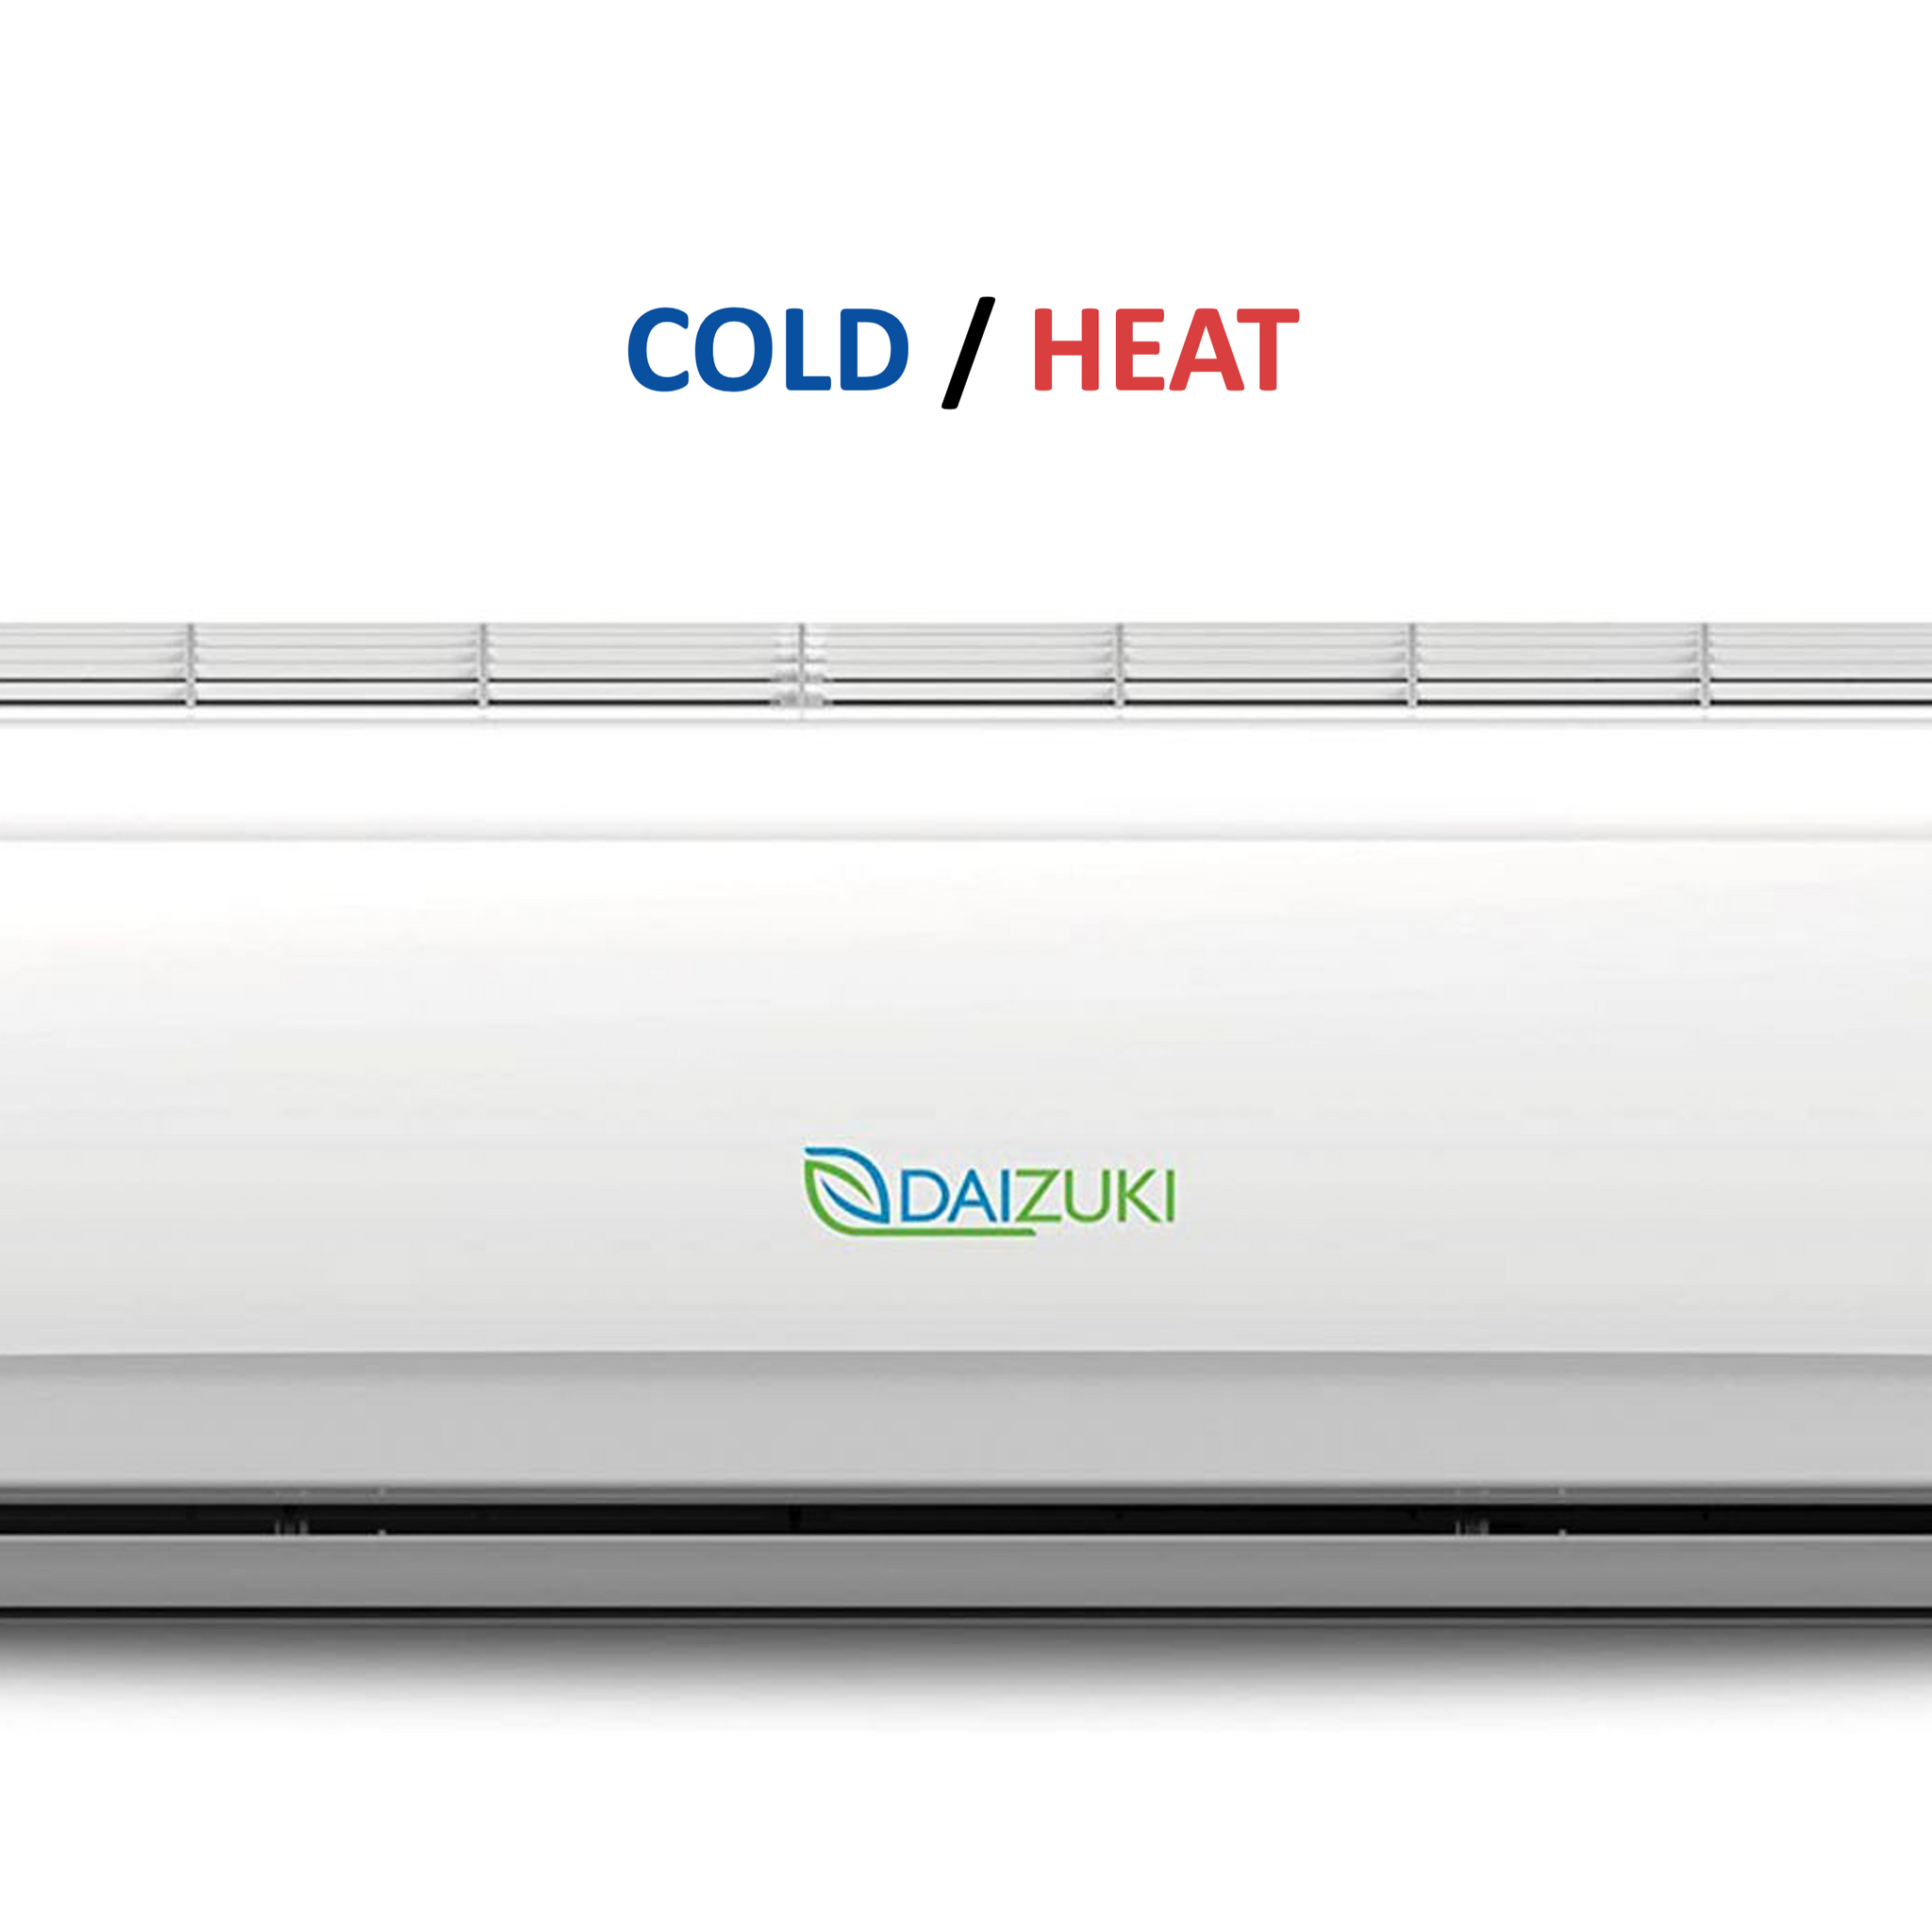 Minisplit Cold/Heat Air conditioner - 9,000 BTU 110V (20 SEER) - DAIZUKI